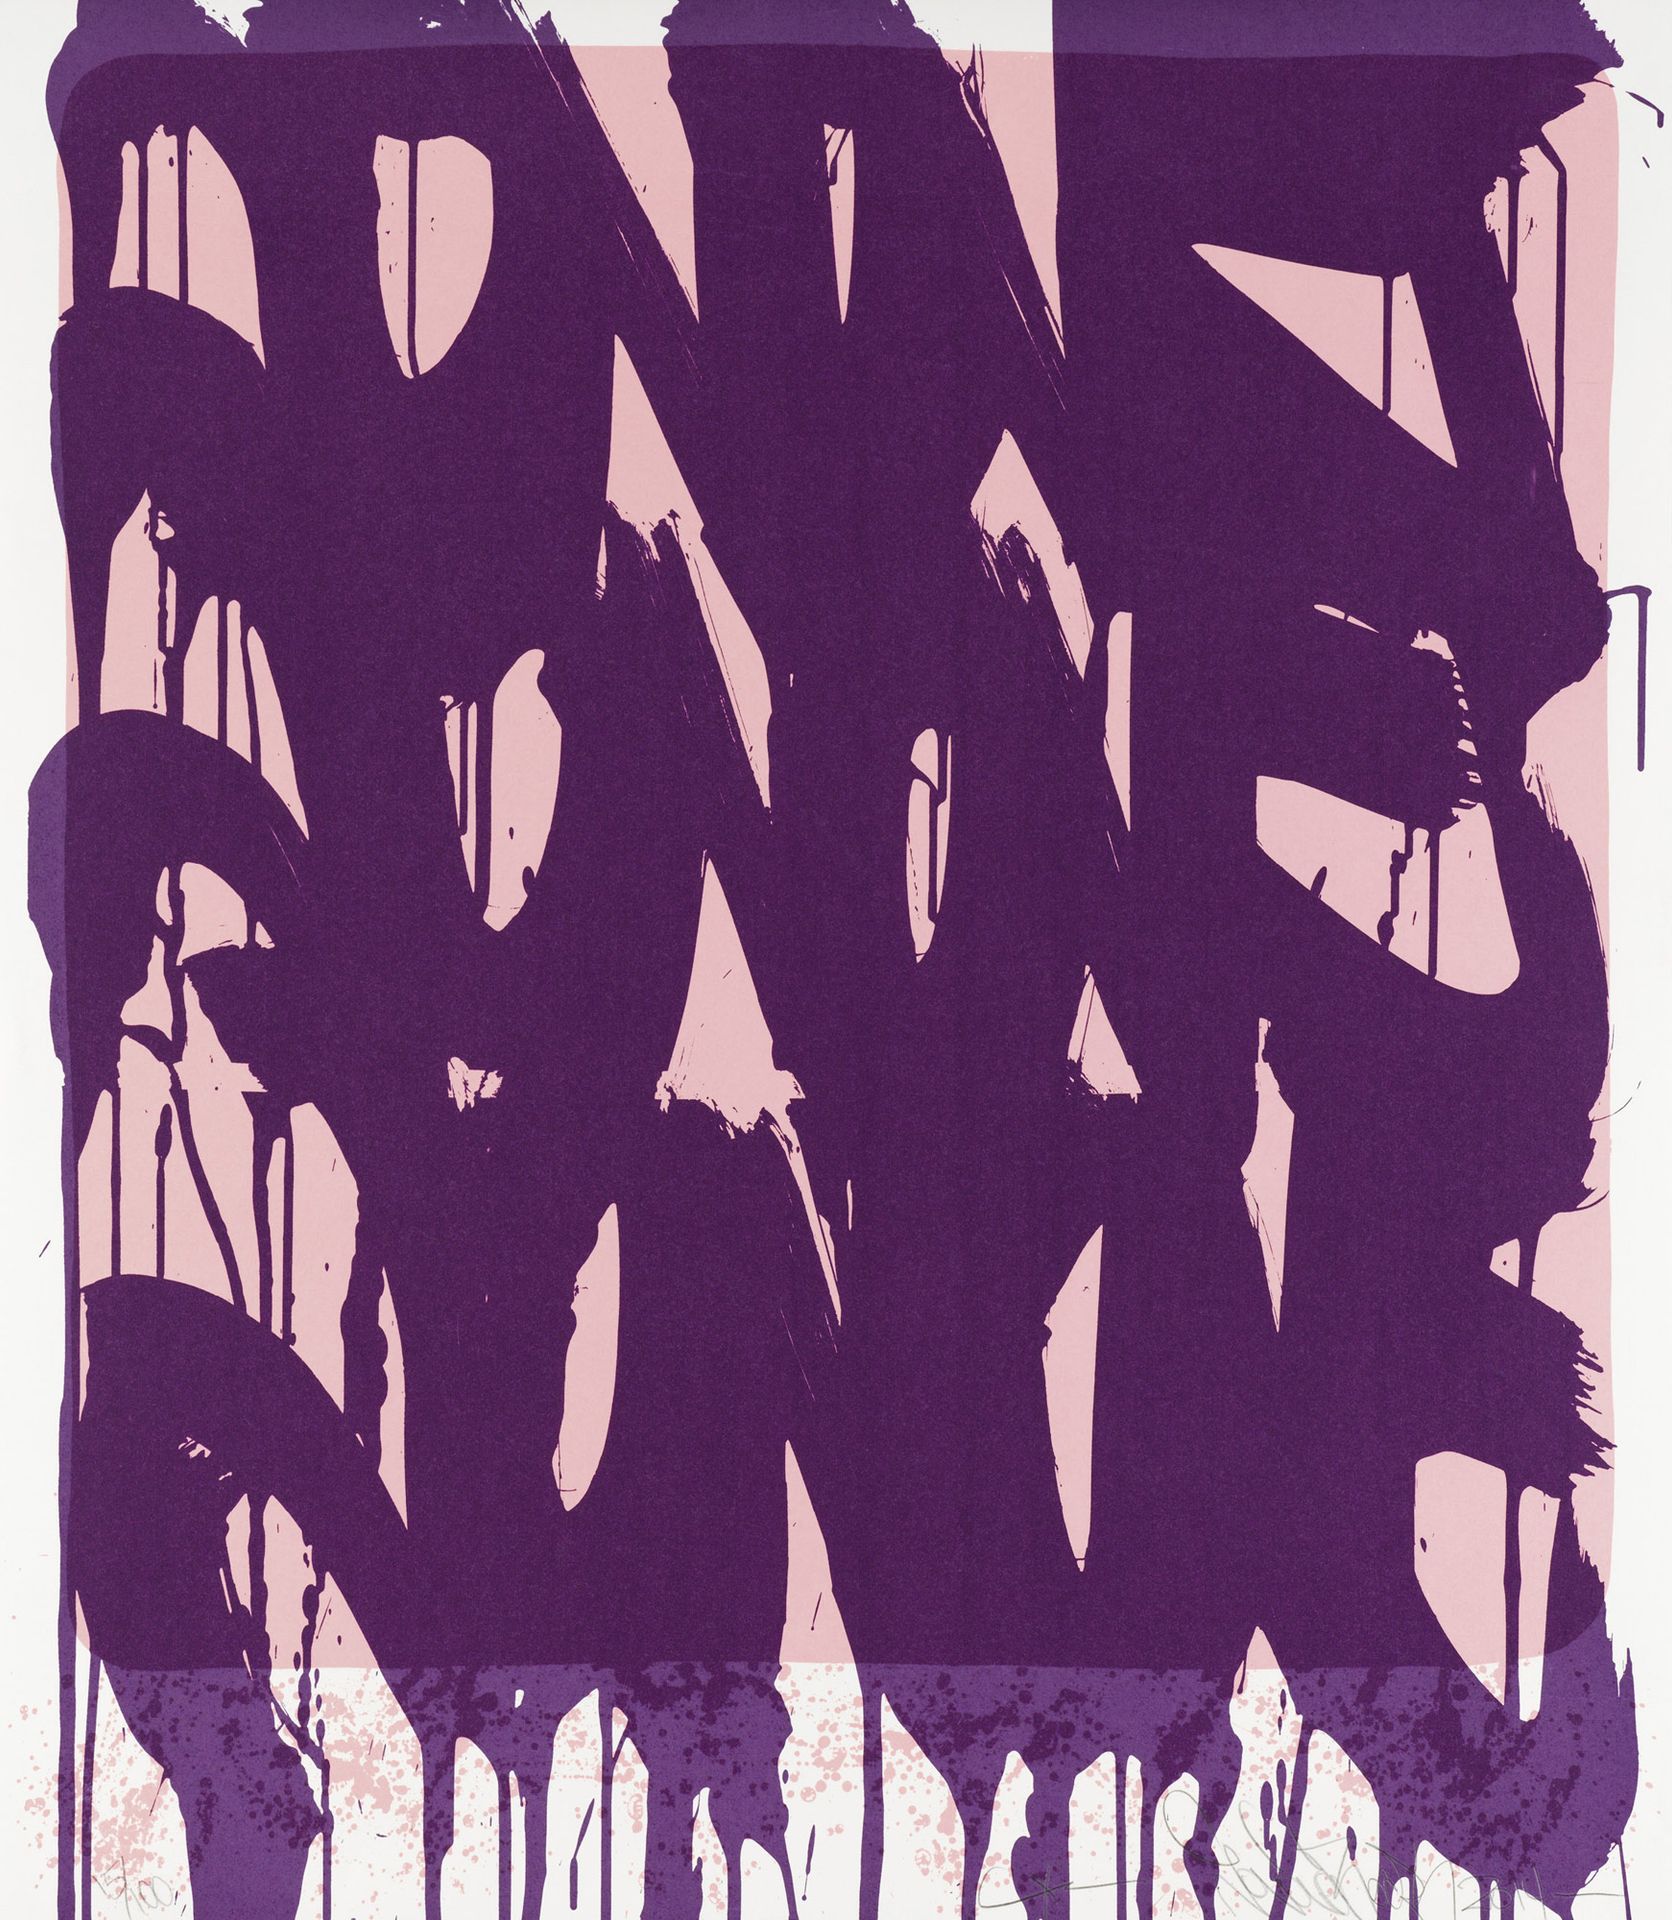 JONONE (ANDREW PERELLO DIT) (NE EN 1963) DRIPPING TAGS, 2014
Serigrafía sobre pa&hellip;